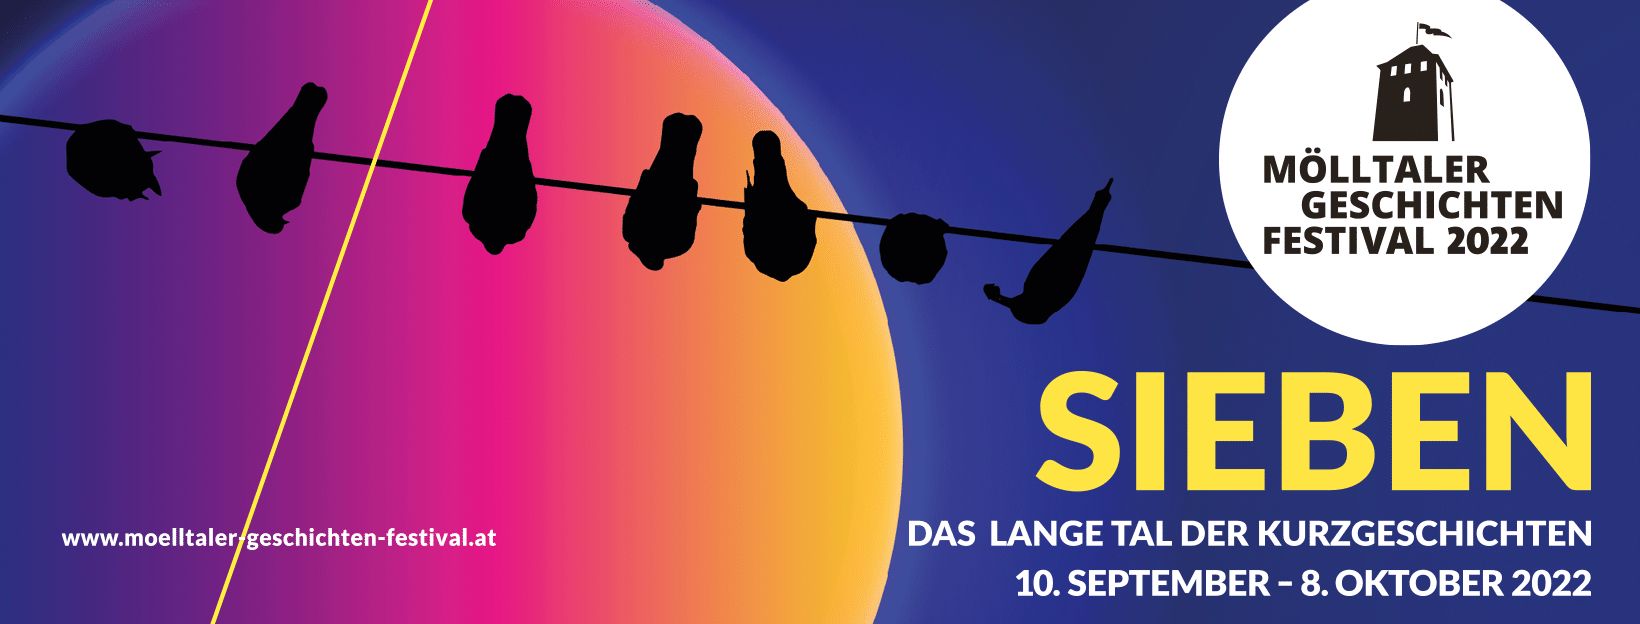 10.09.-08.10.22 – 7. Mölltaler Geschichten Festival